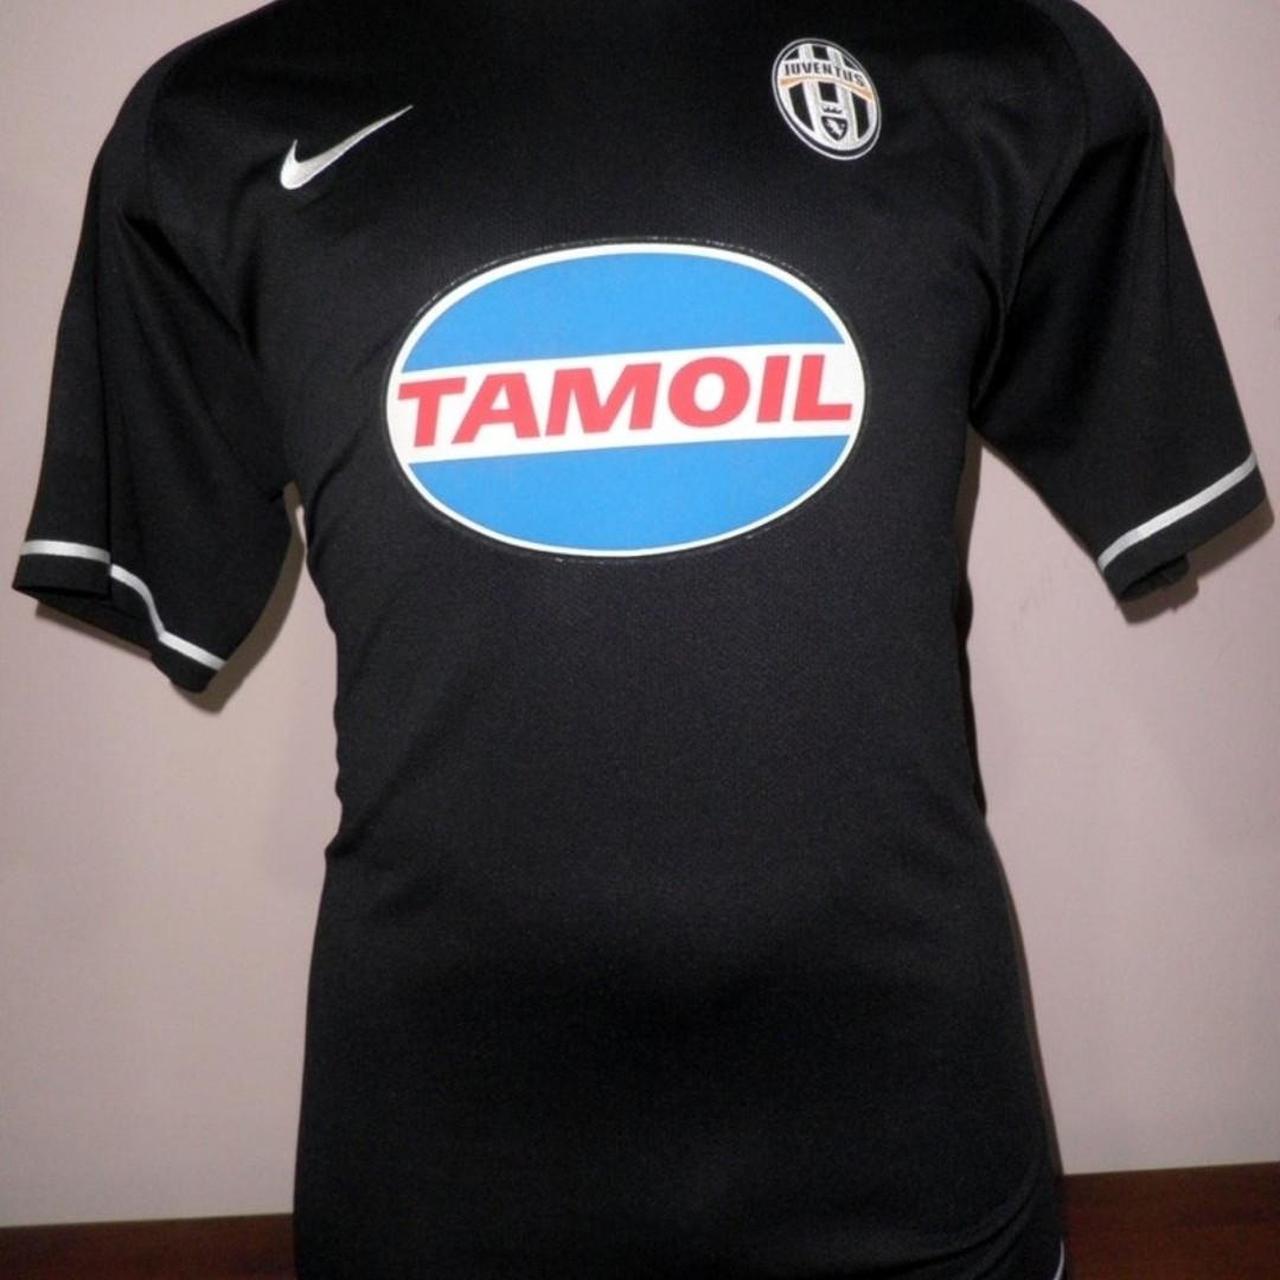 Juventus FC 2006-07 Away Kit